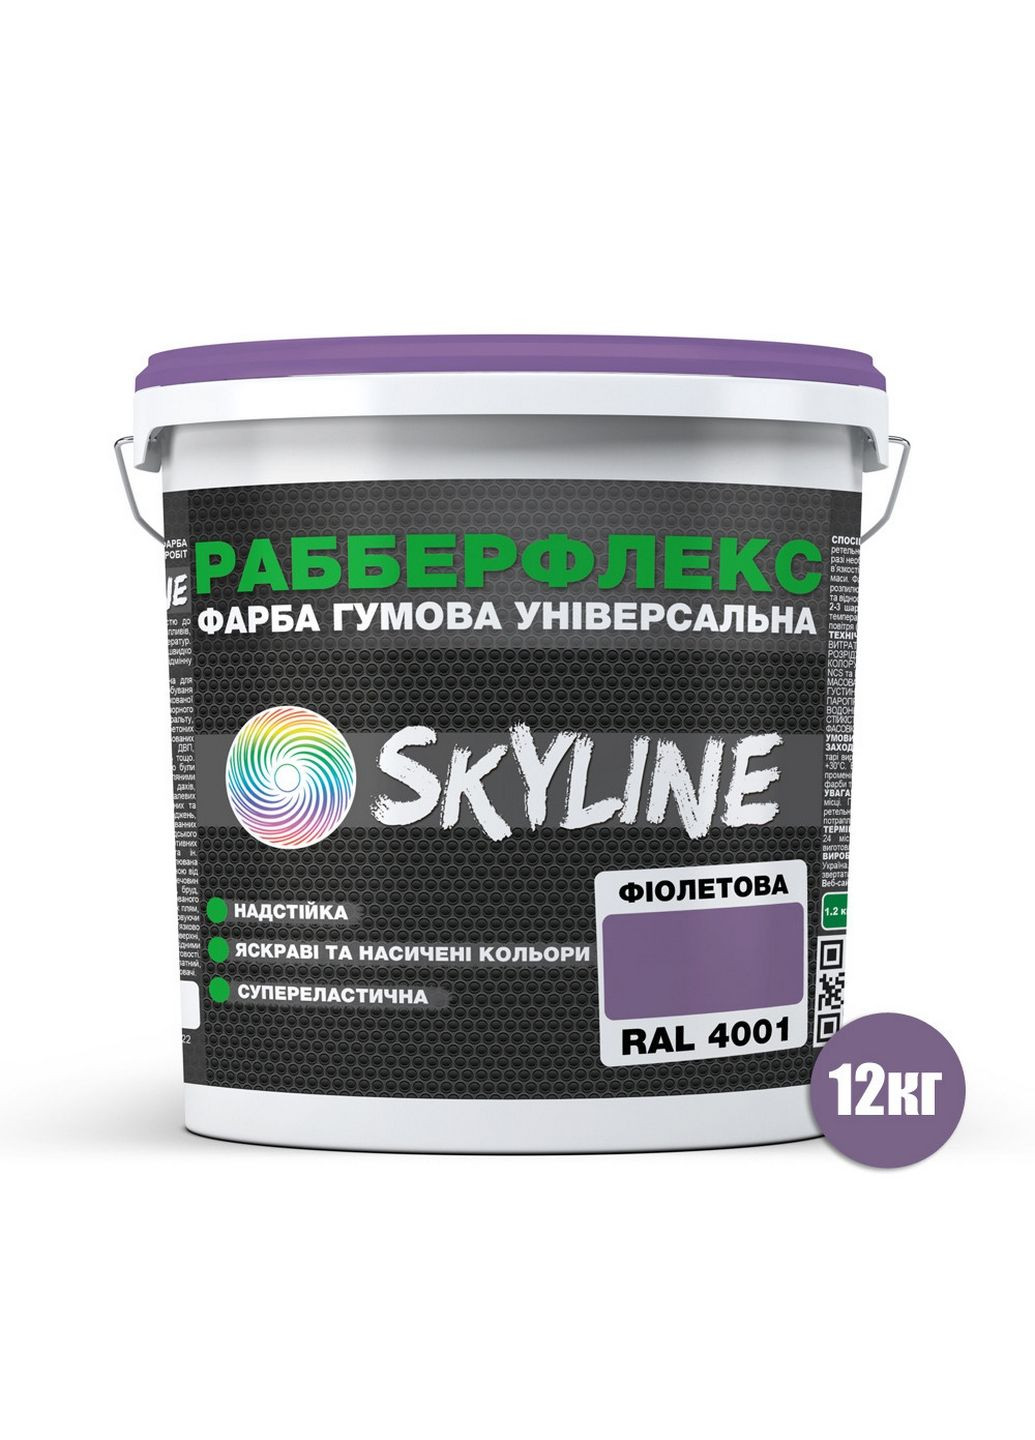 Надстійка фарба гумова супереластична «РабберФлекс» 12 кг SkyLine (283325934)